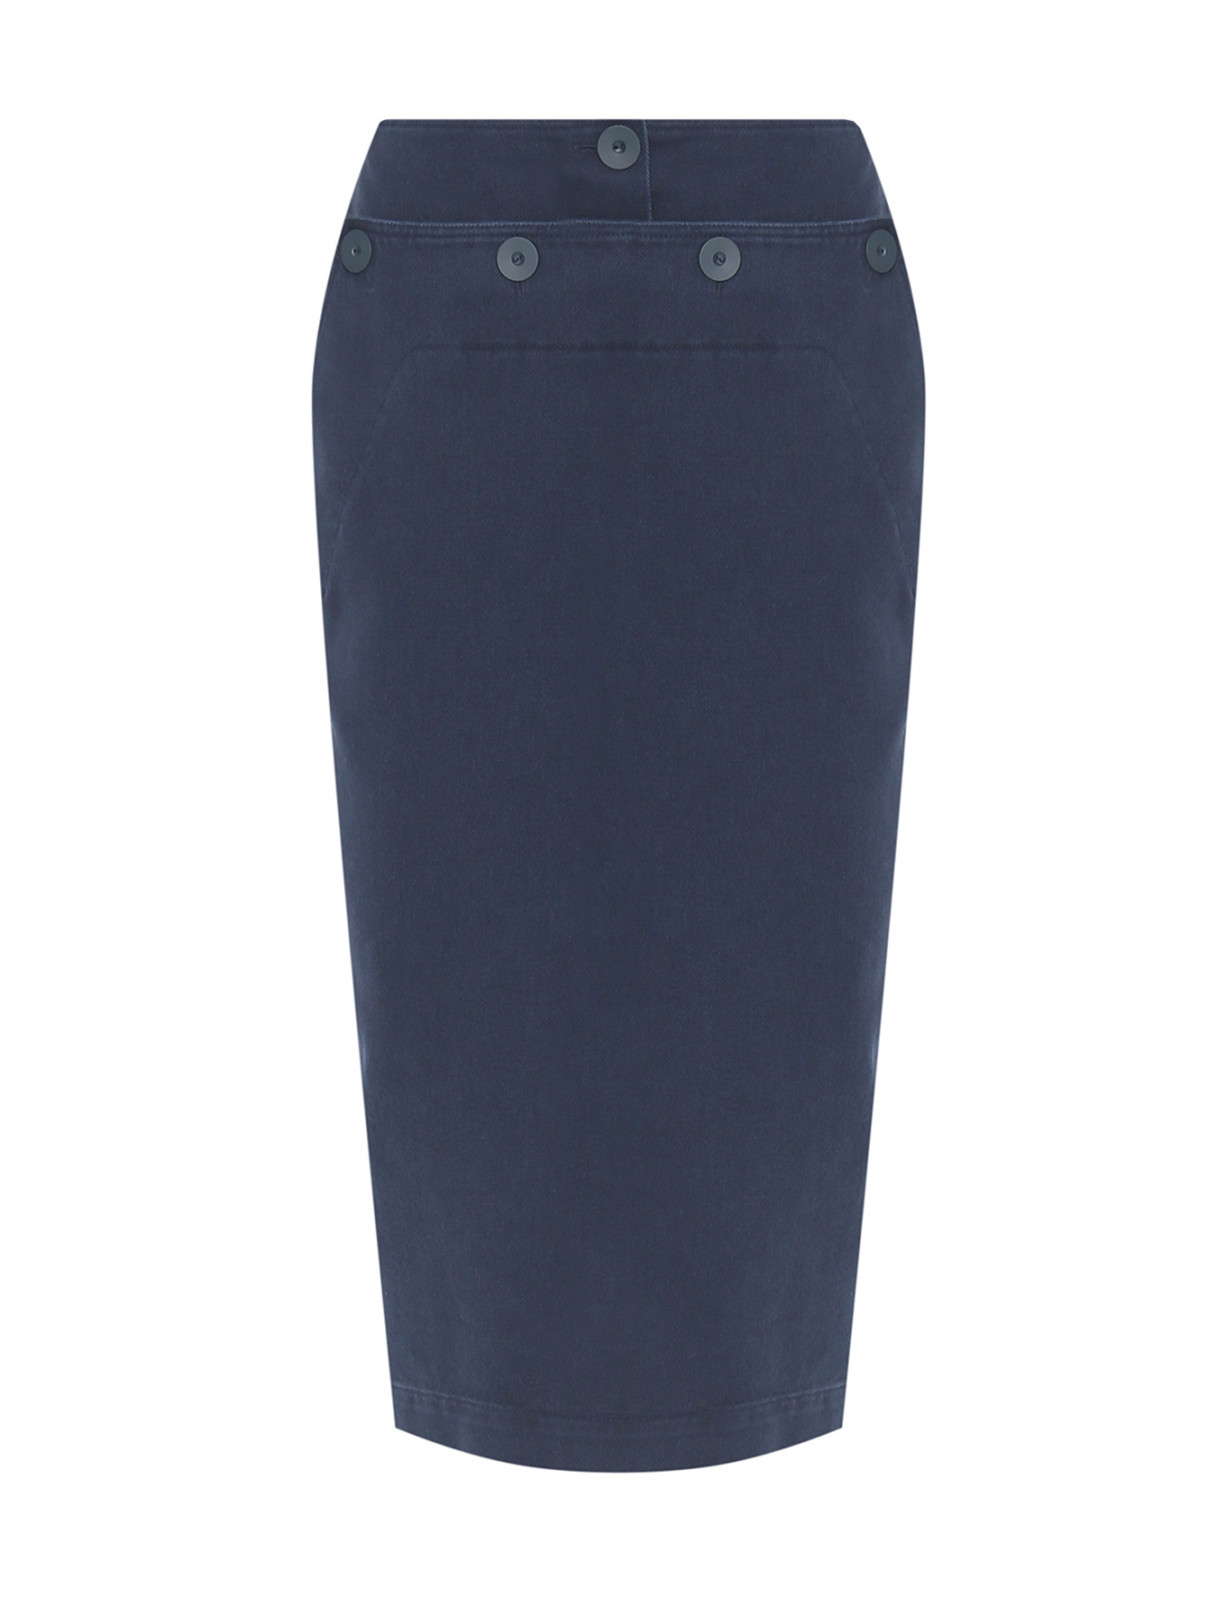 Джинсовая юбка с пуговицами Max Mara  –  Общий вид  – Цвет:  Синий